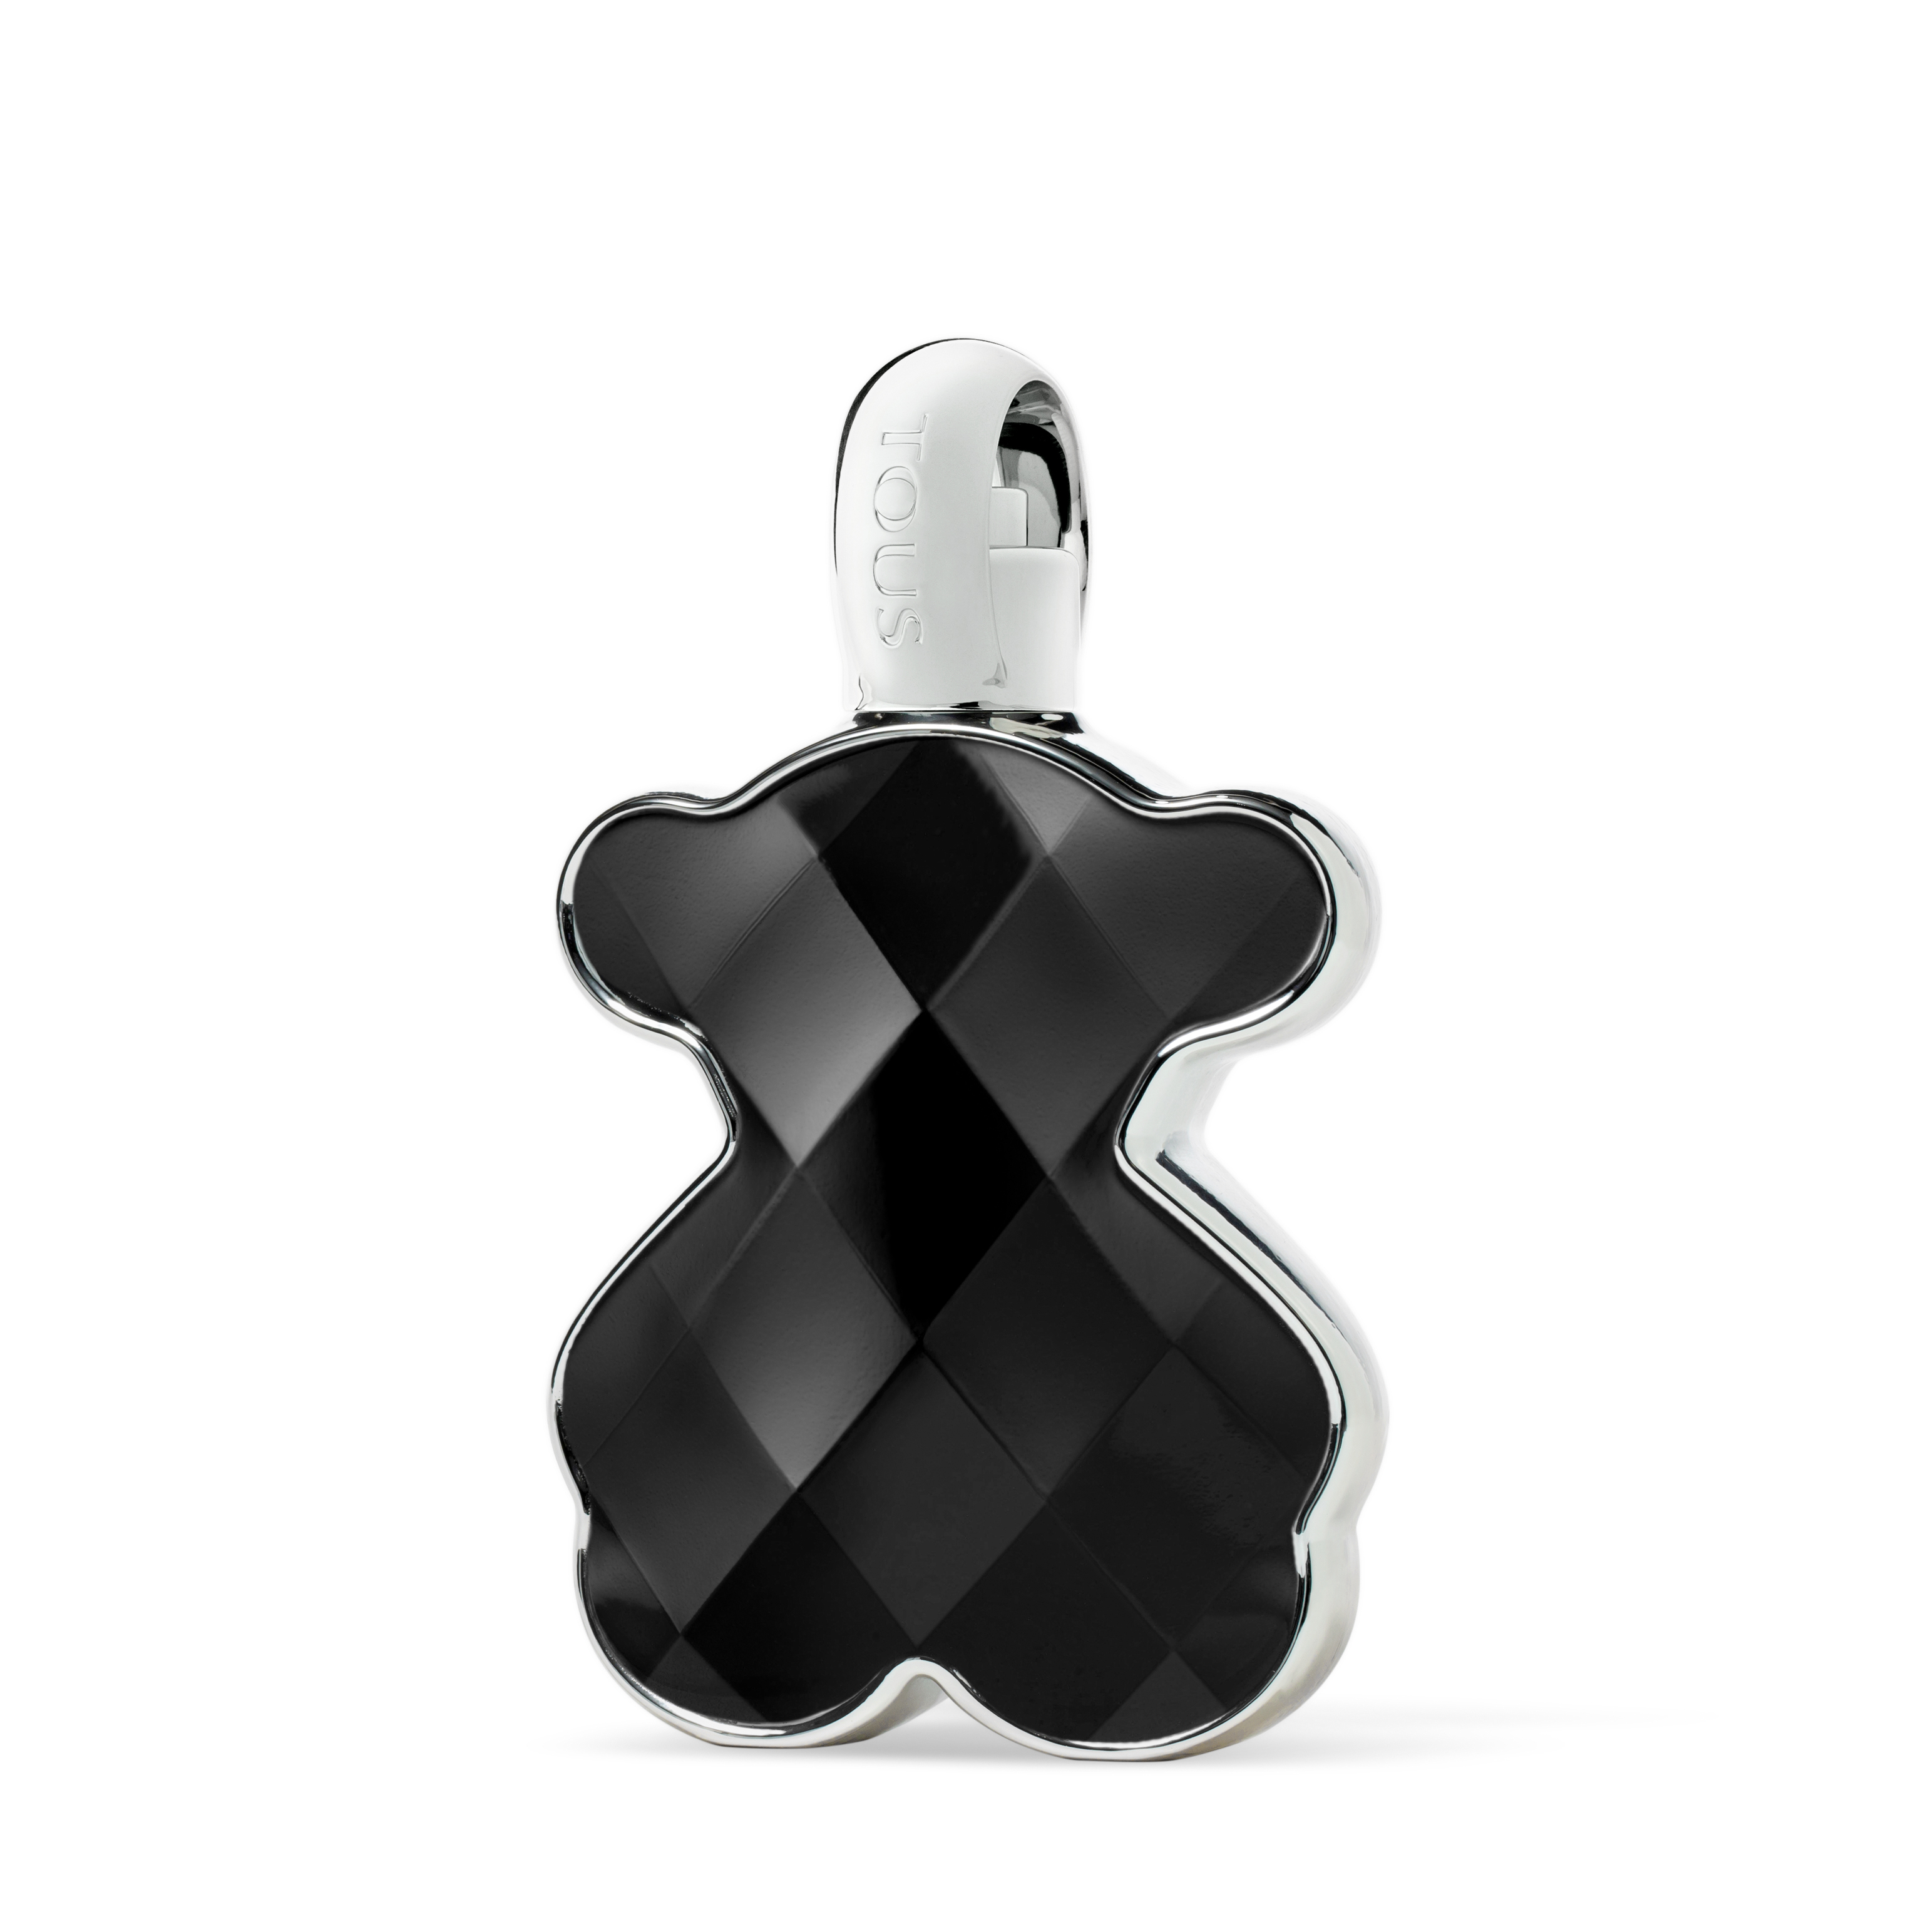 LoveMe Tous The Onyx Parfum de Tous, con orquídea negra y vainilla (109 euros).